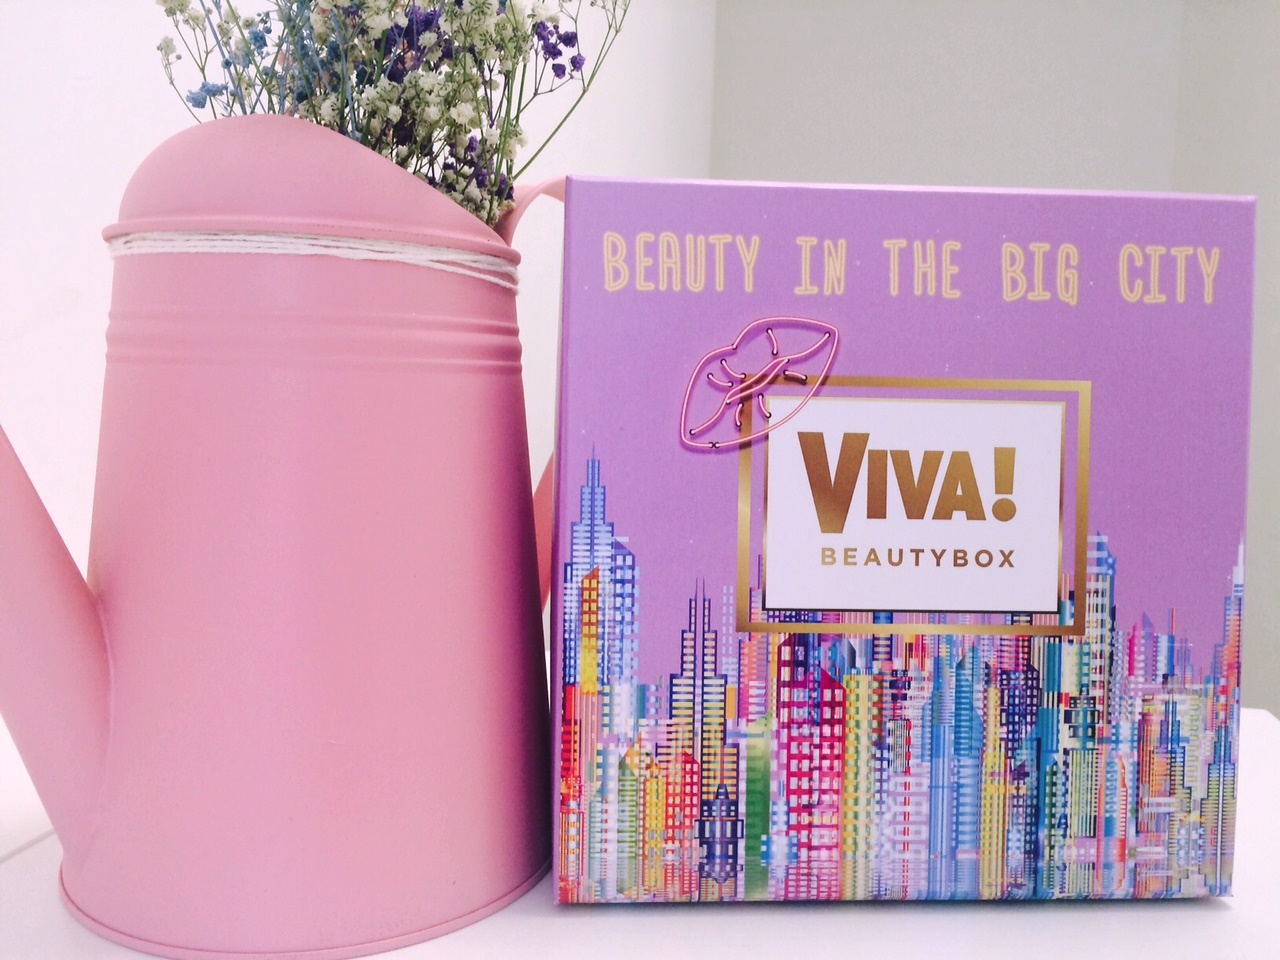 Viva! Beauty Box «Beauty in the Big City»